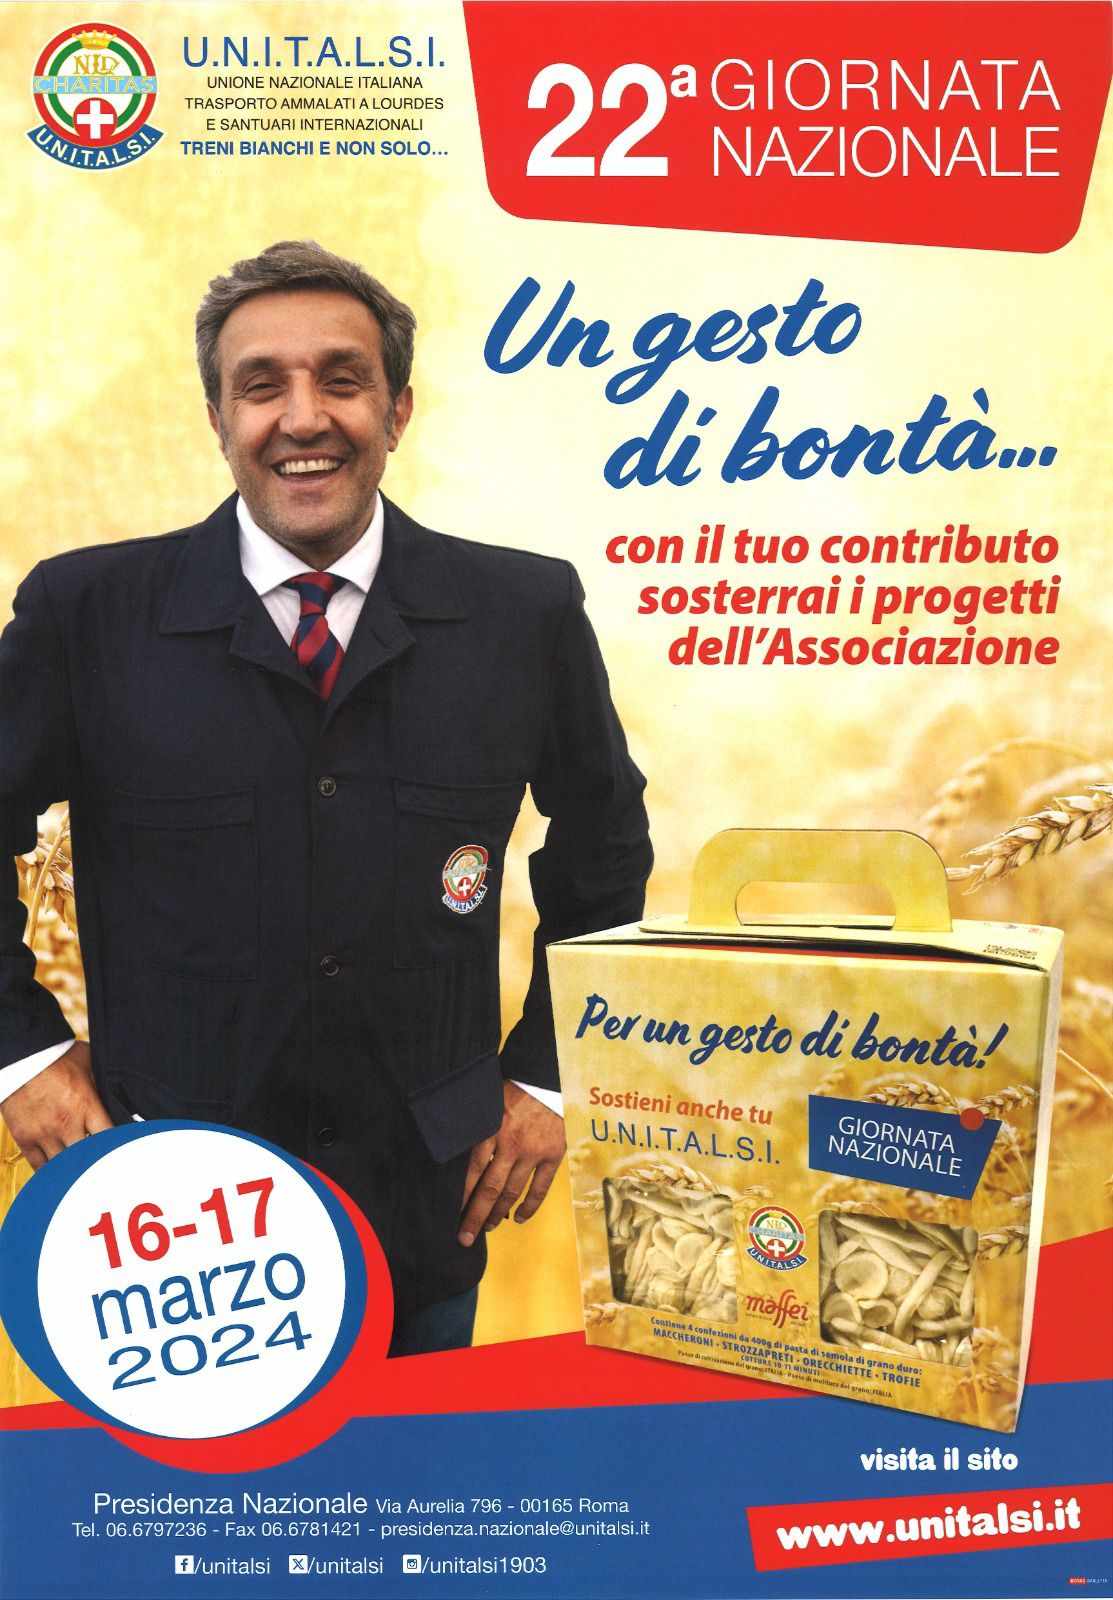 Giornata nazionale Unitalsi: cofanetto con confezioni di pasta, banchetti con i punti di offerta a Capri e ad Anacapri